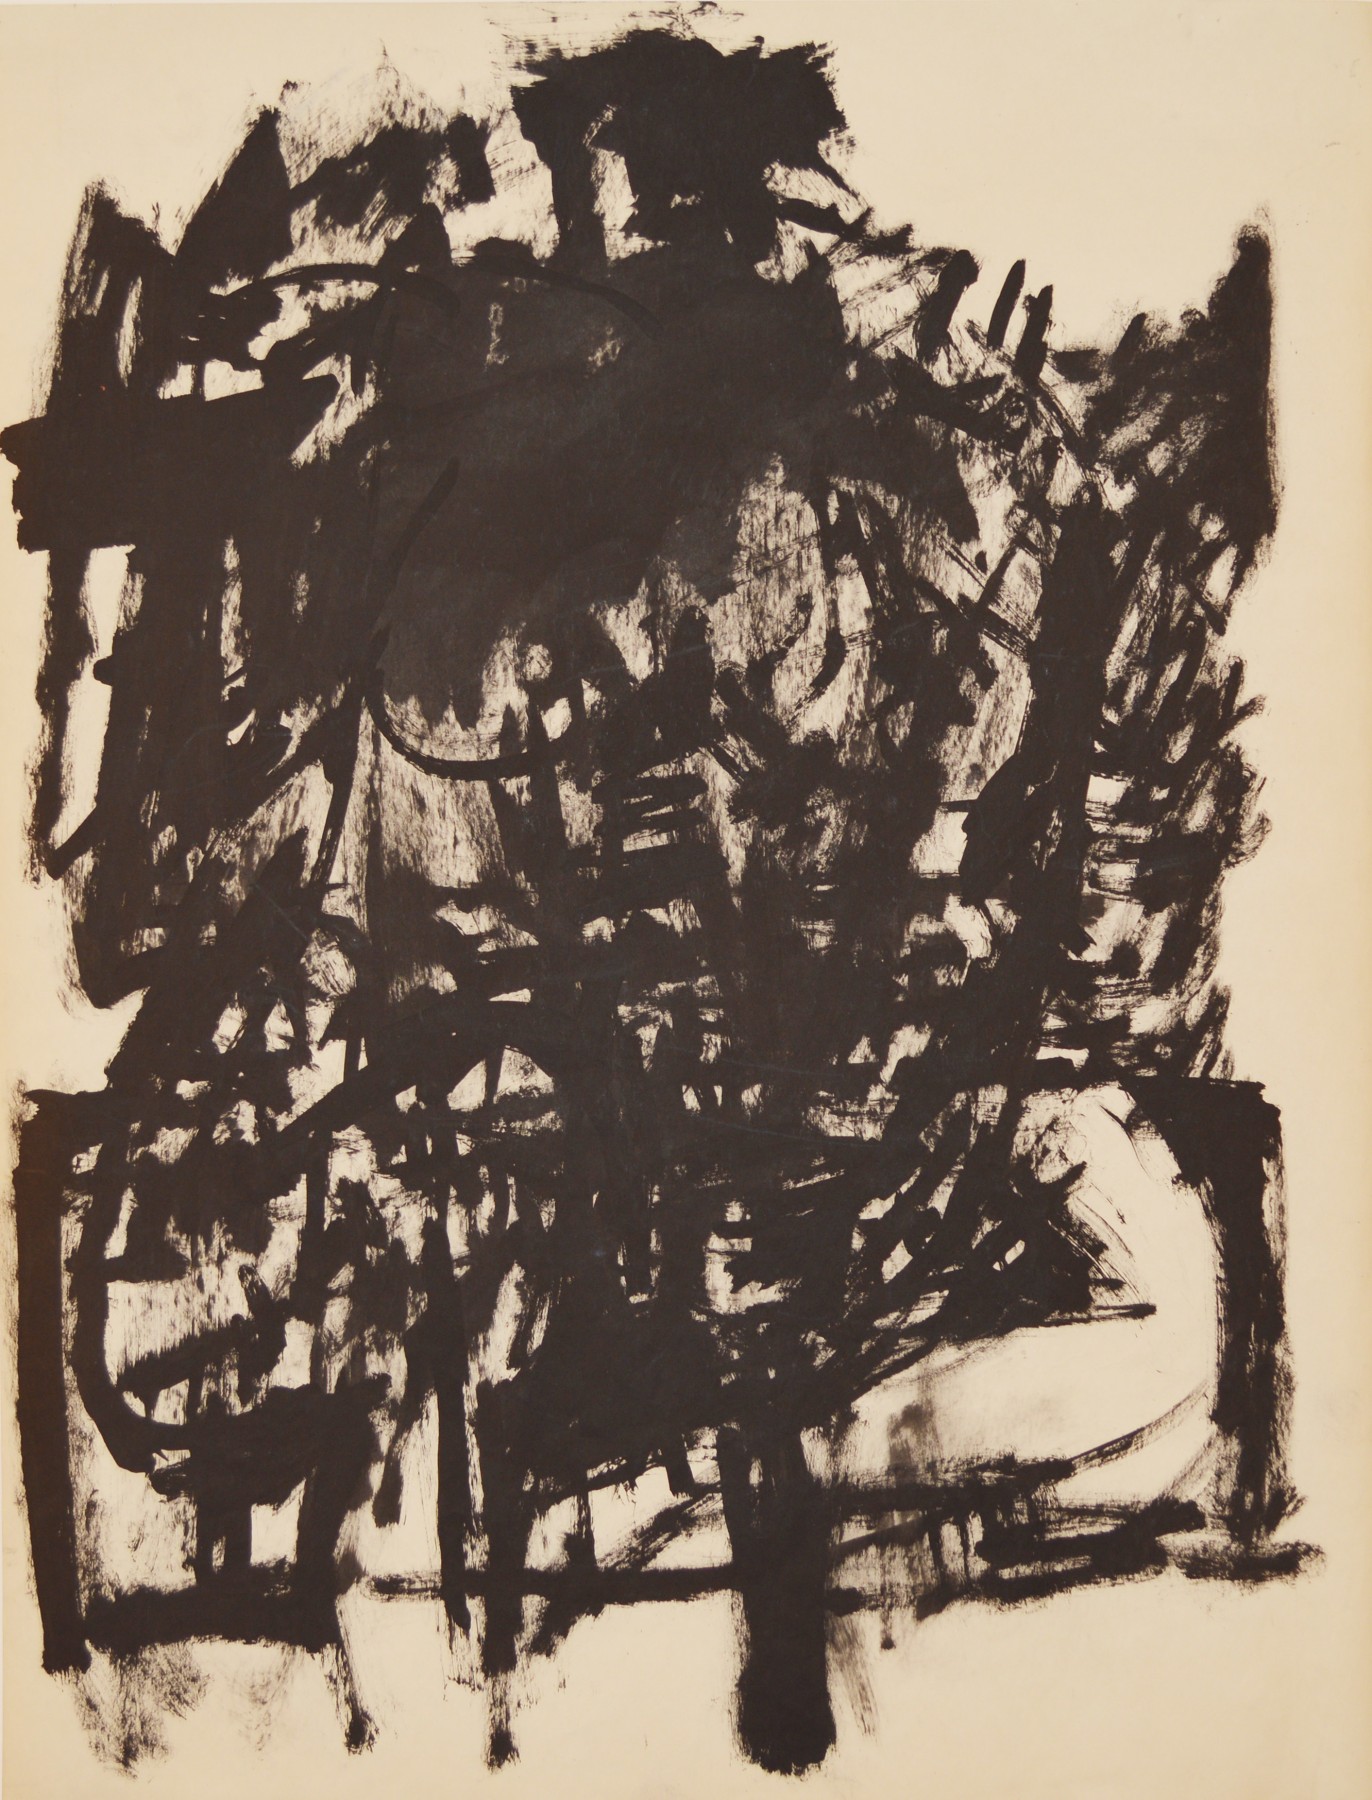 Jack Tworkov, Untitled (Seated Figure), c. 1954